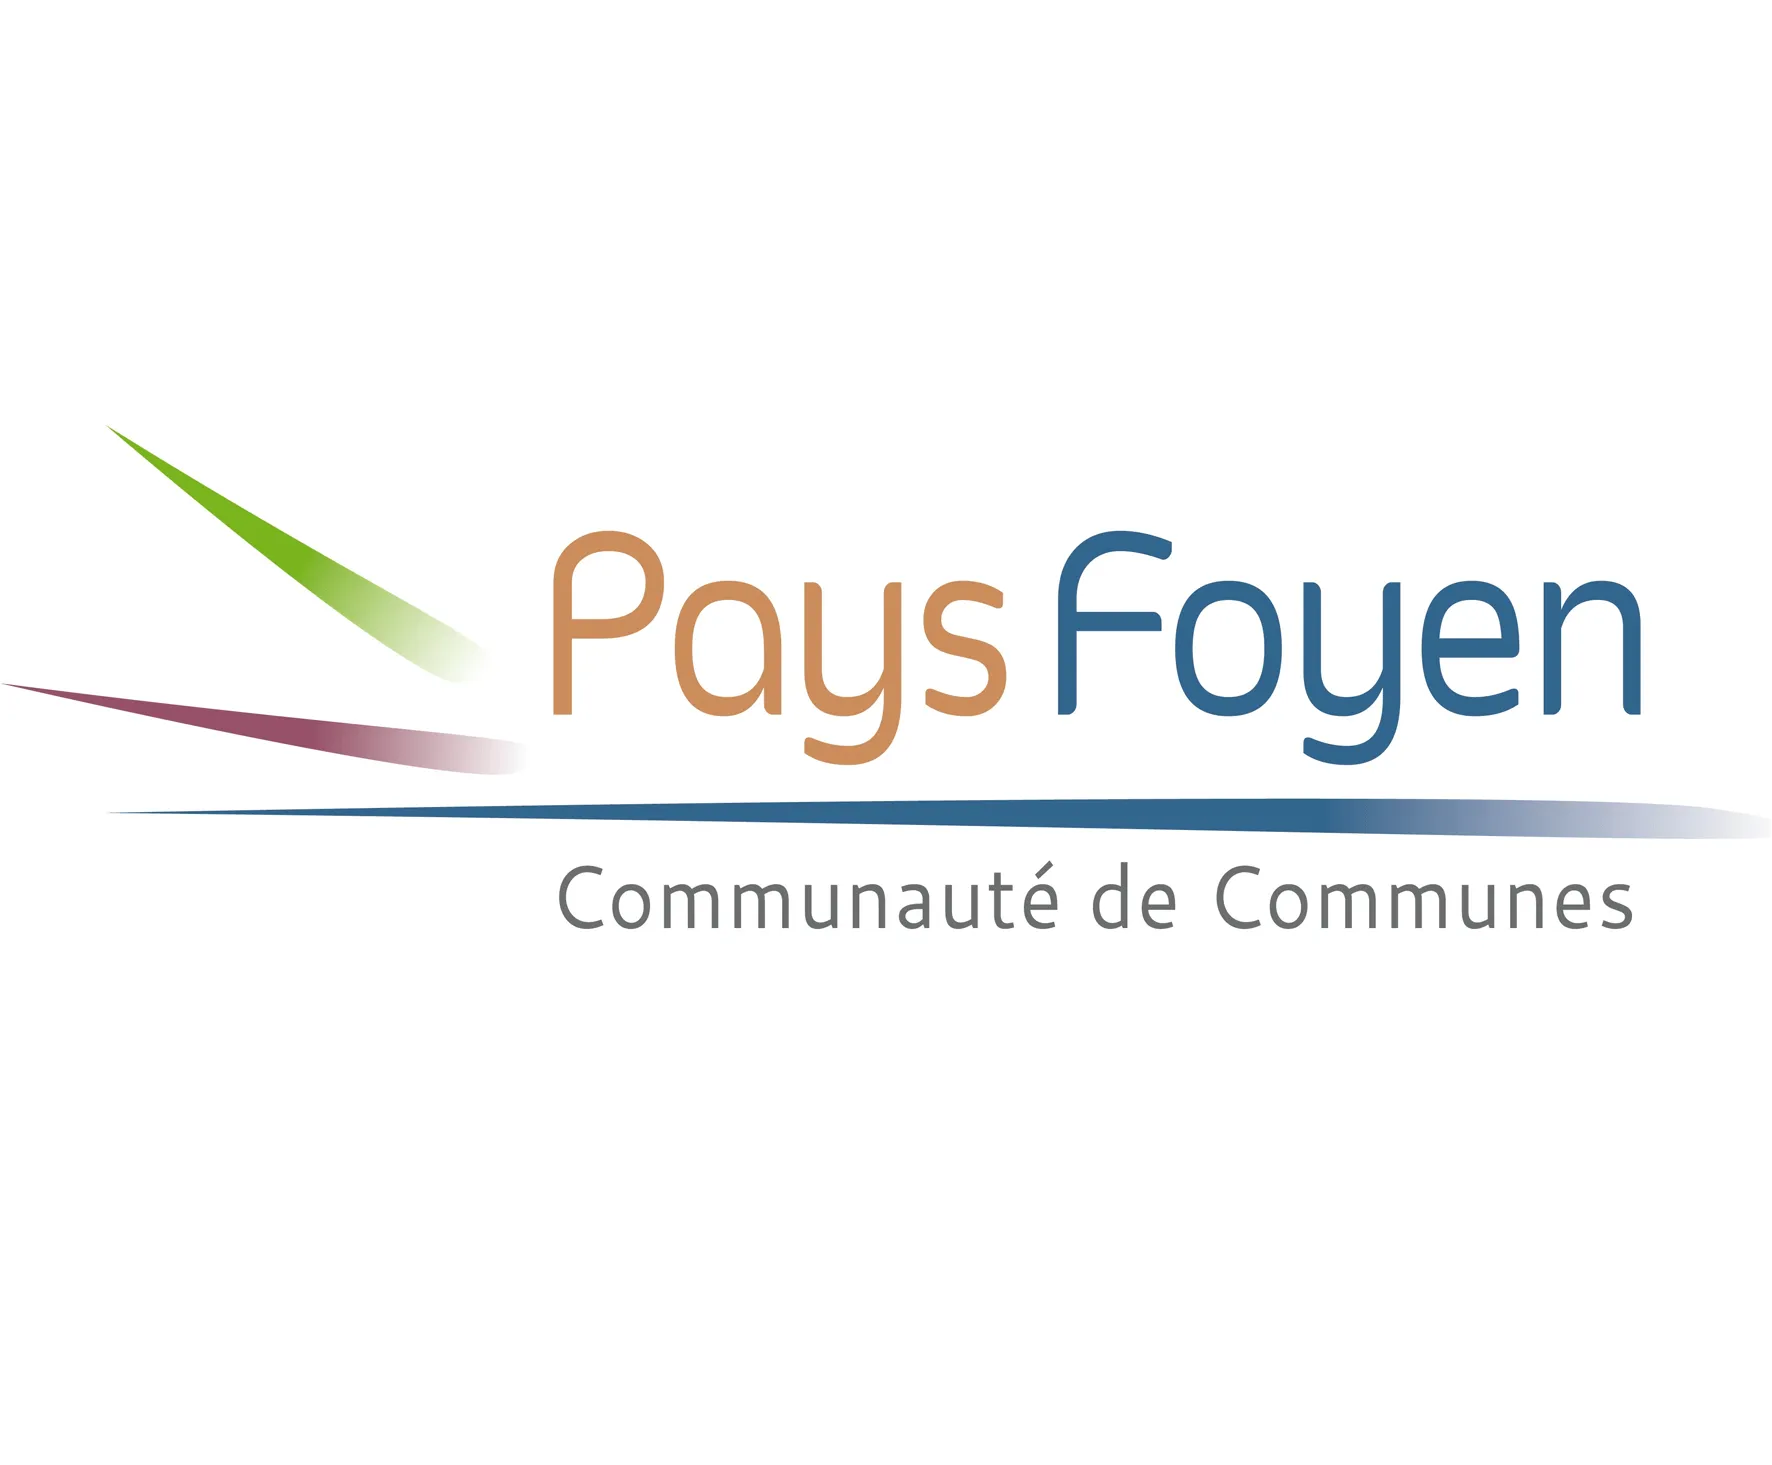 Pays Foyen logo